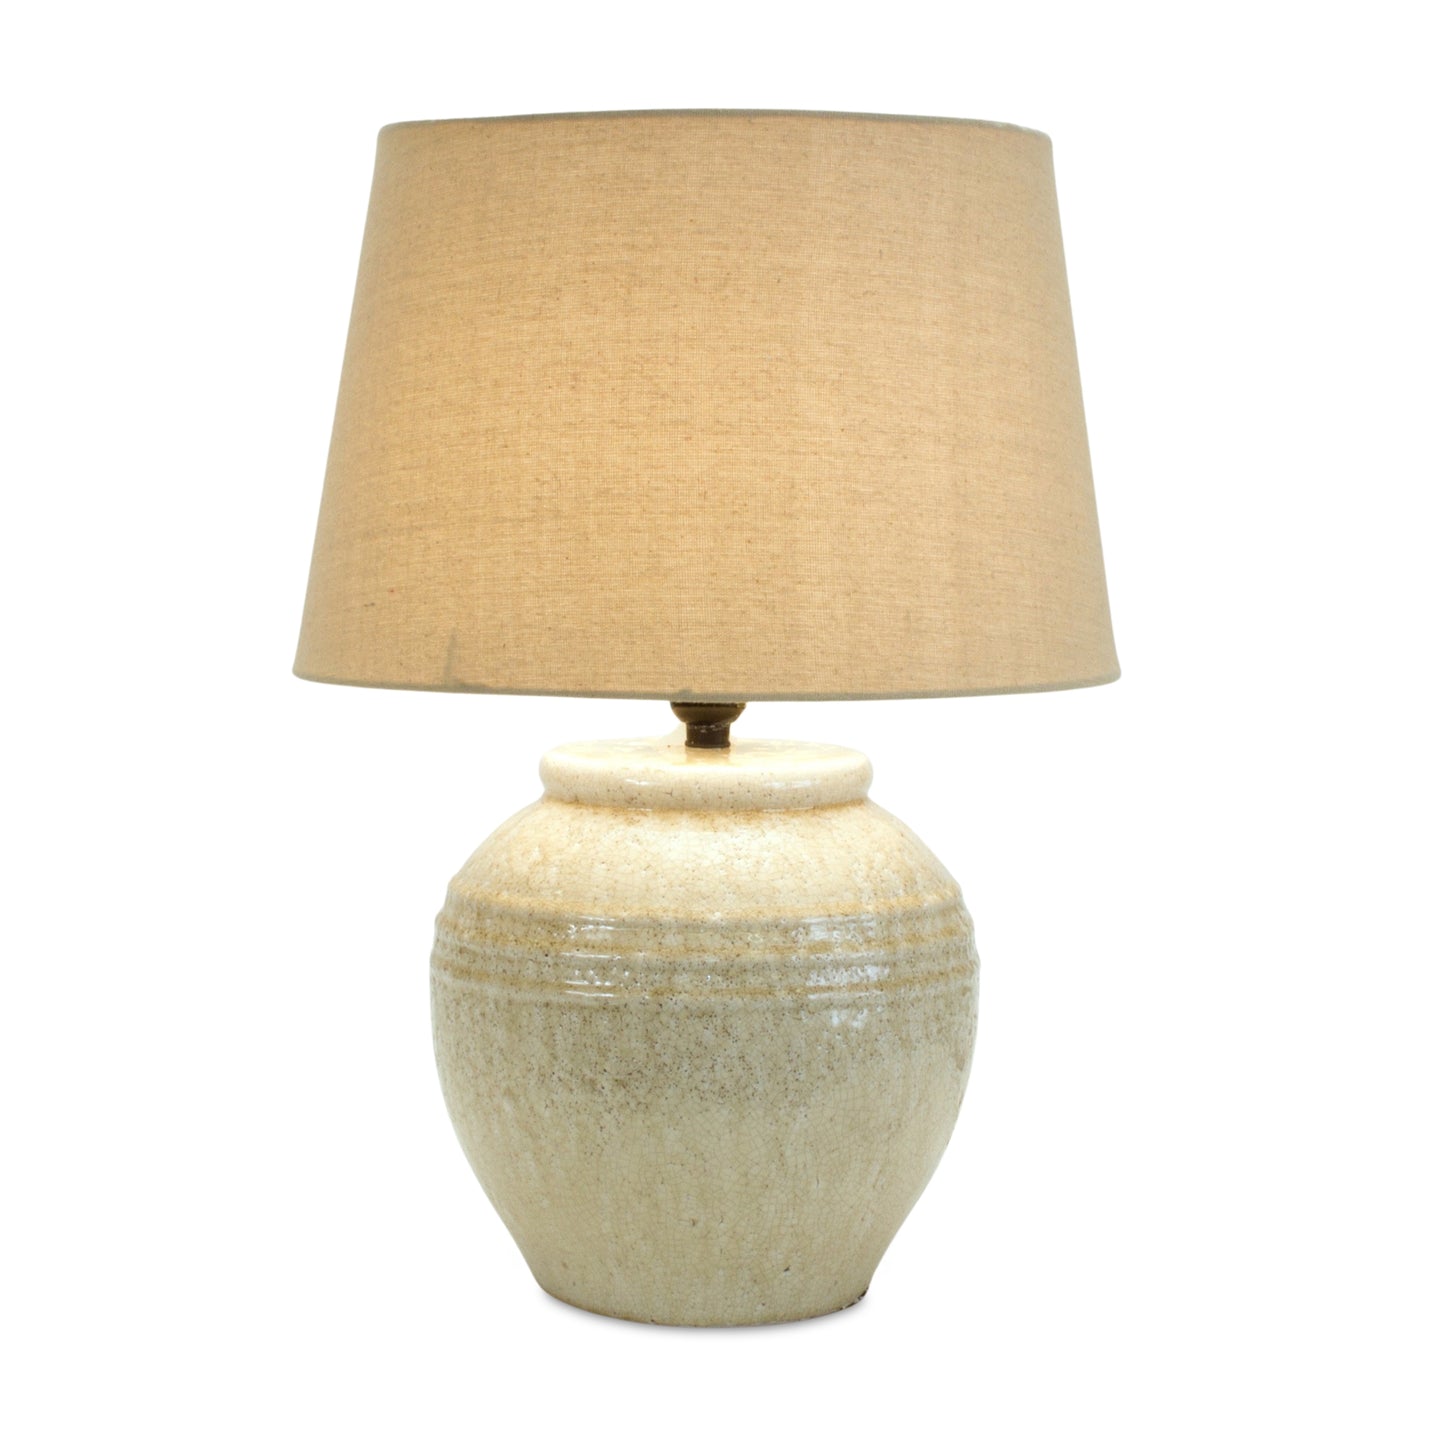 Table Lamp 20"H Terra Cotta/Linen